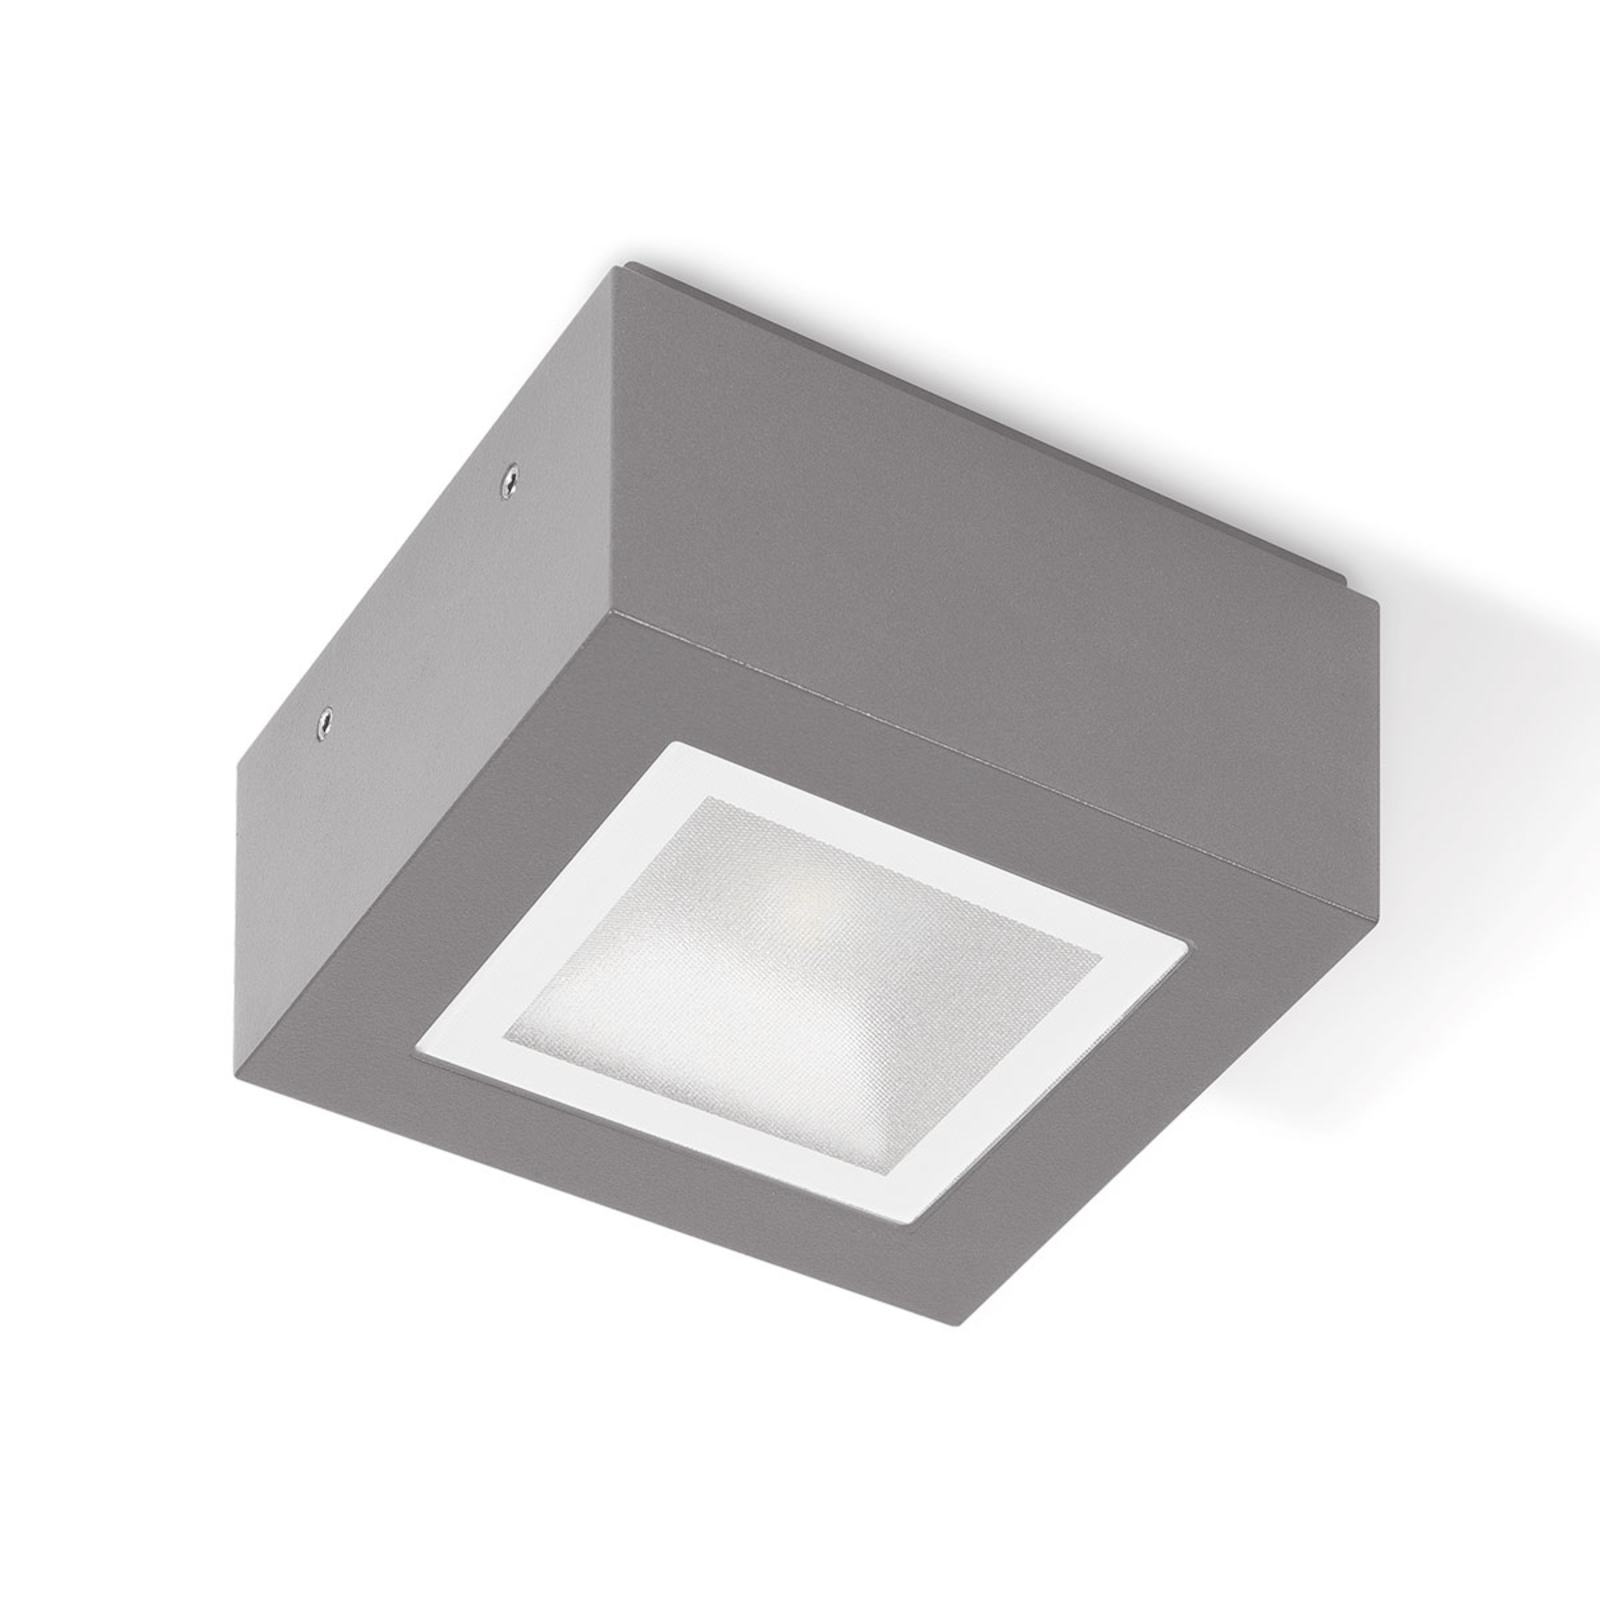 Φωτιστικό οροφής LED Mimik 10 Tech mikroprisma 4.000K